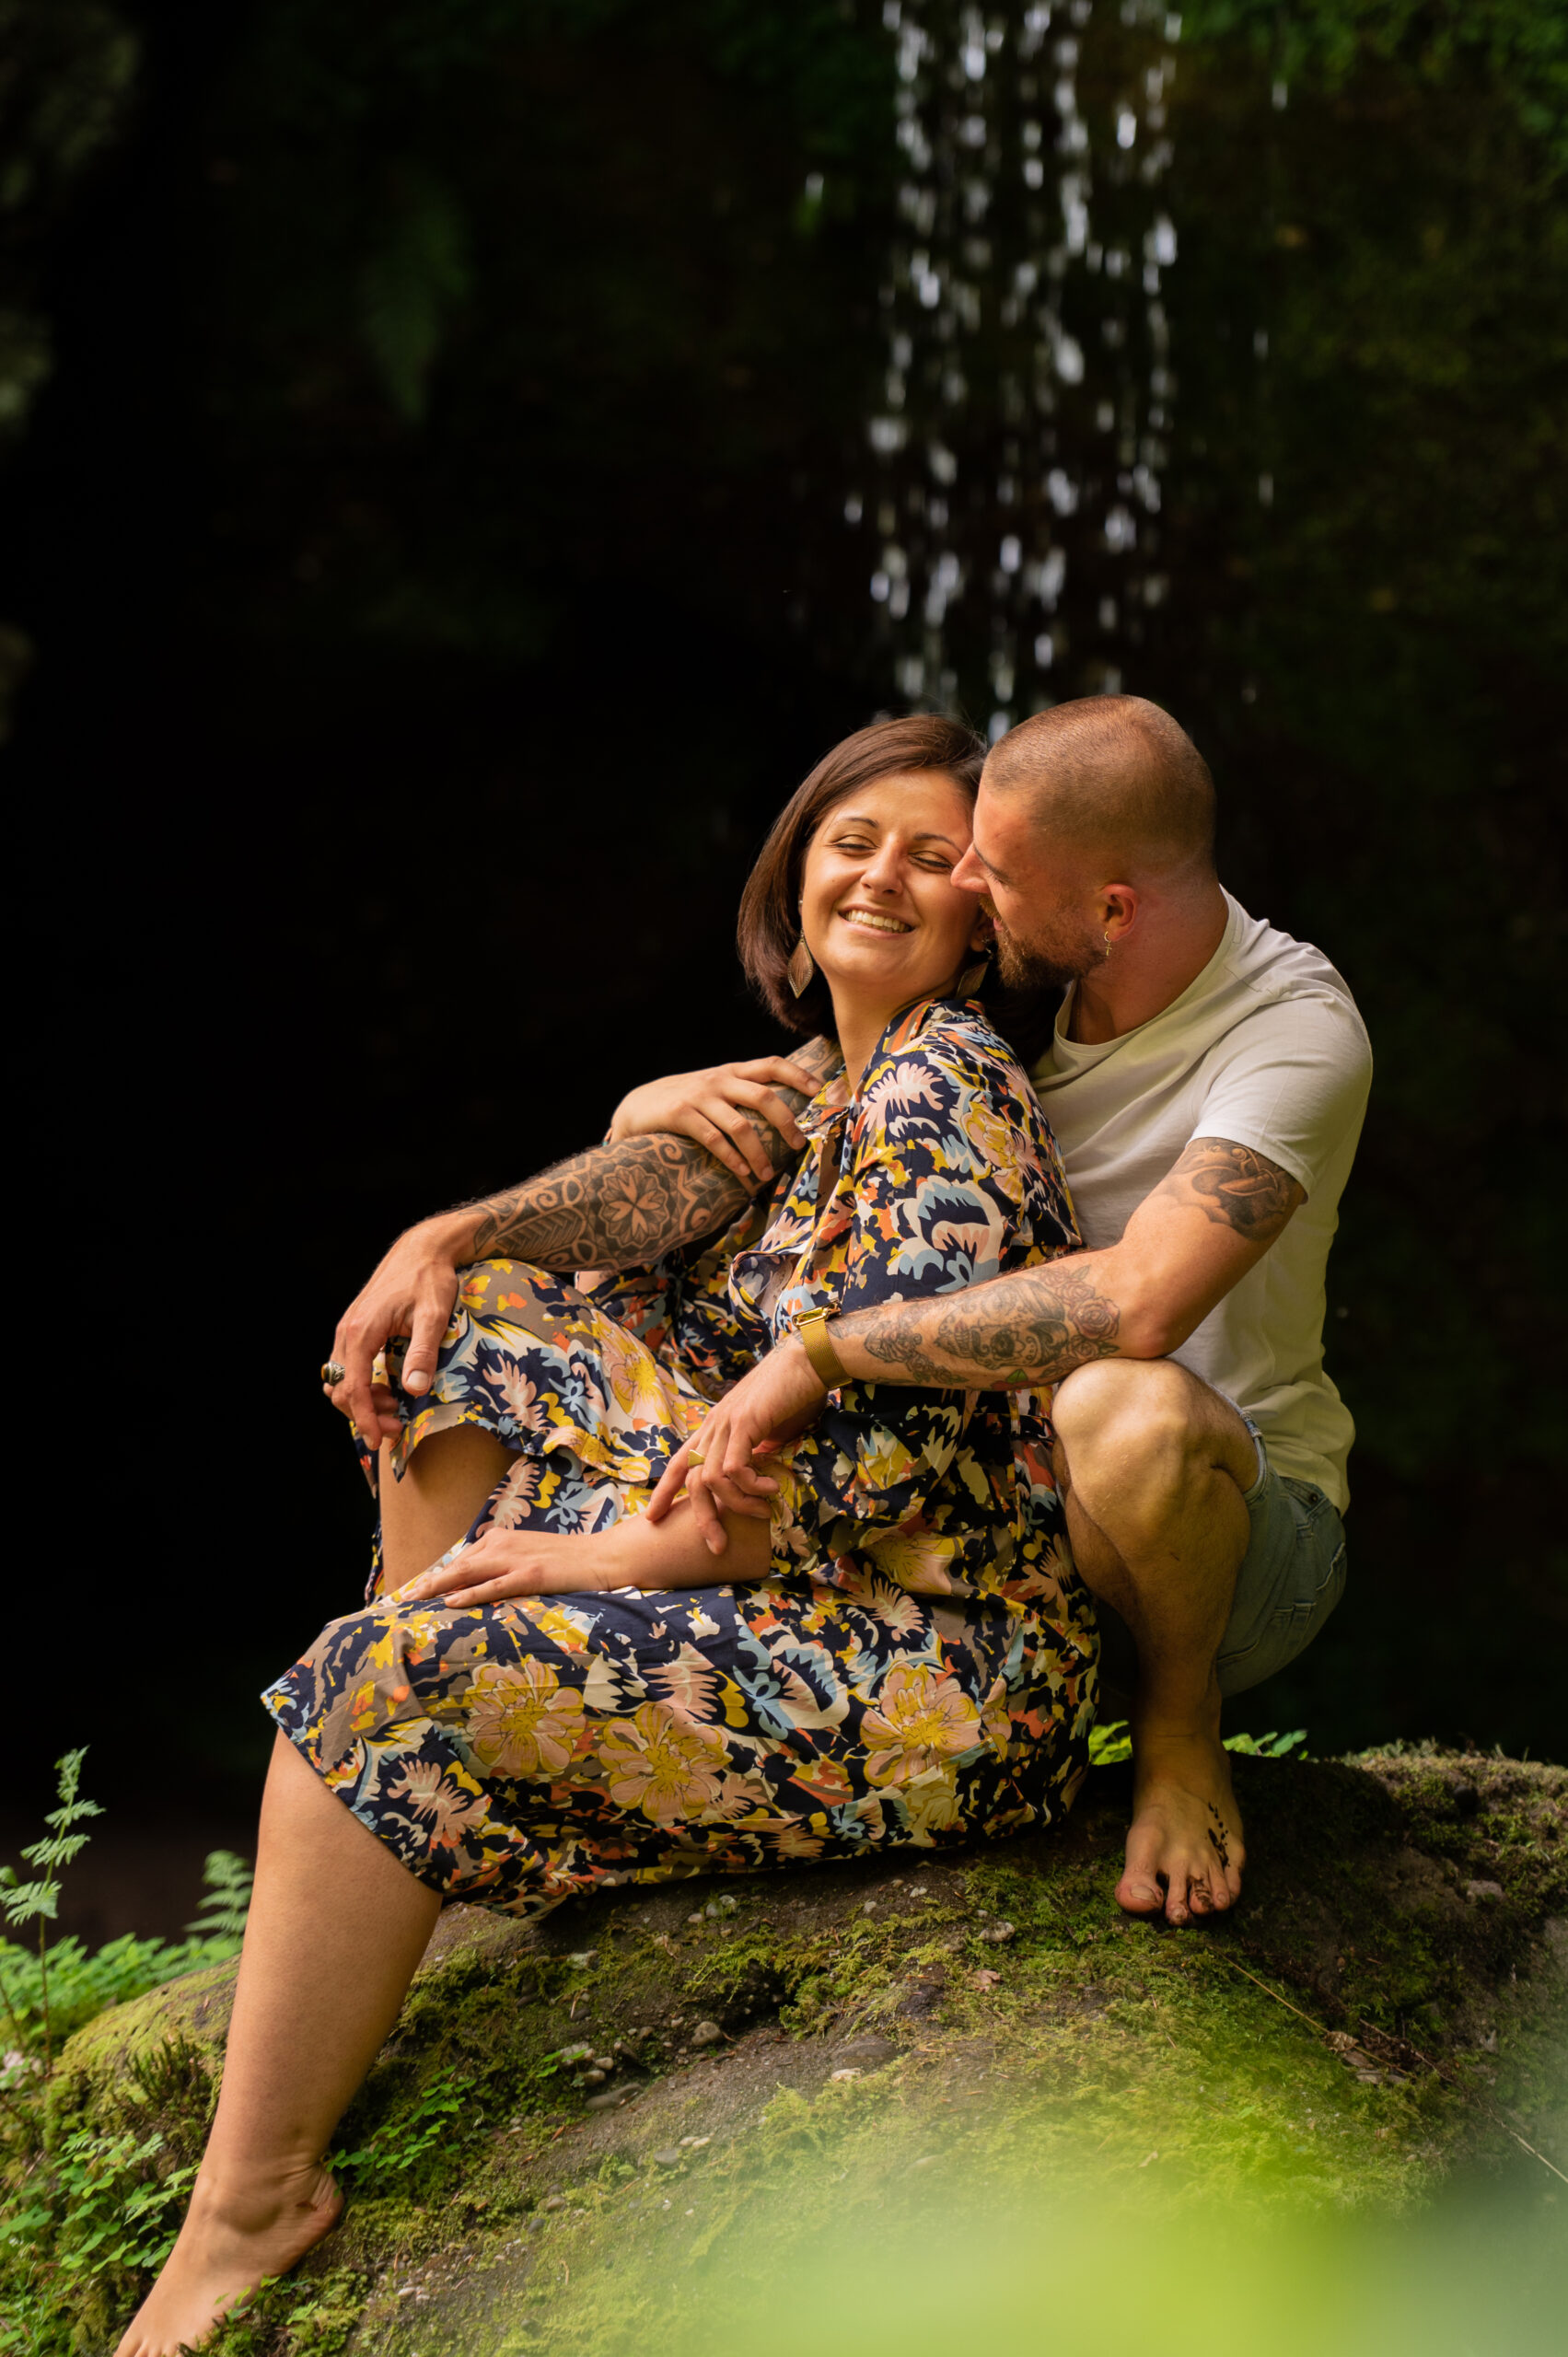 photographe professionnelle couple amour complicité tendresse extérieur arbre foret after Day mariage couleur naturelle regard amoureux cascade